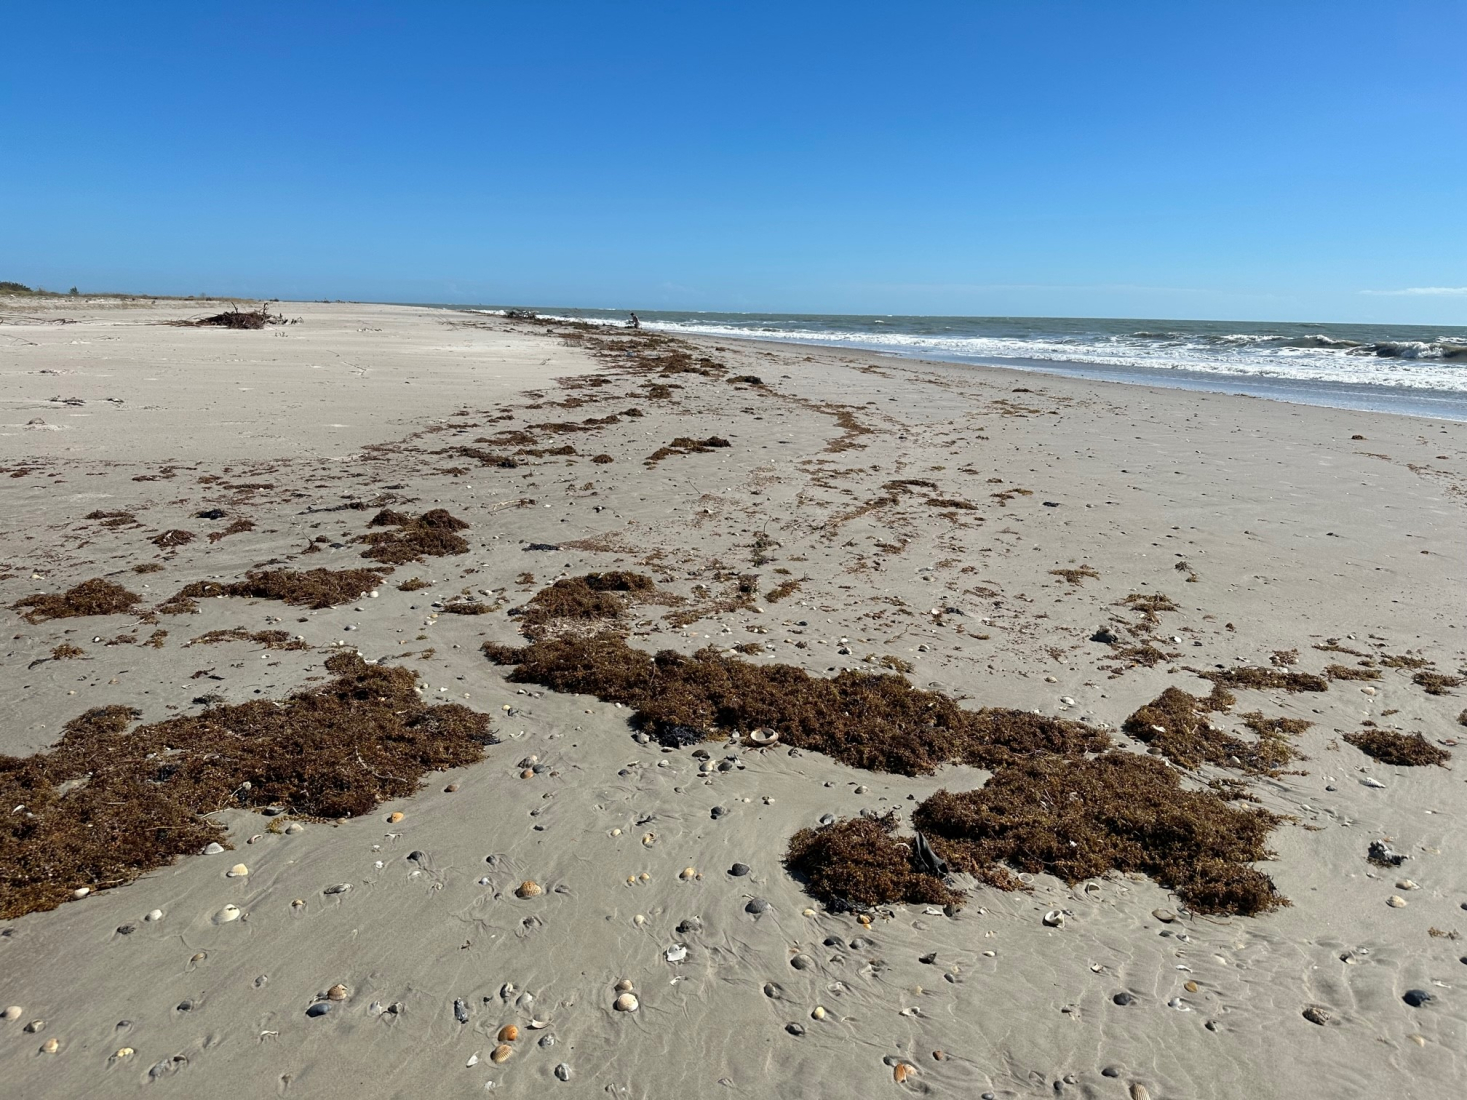 Oiled sargassum on a beach.